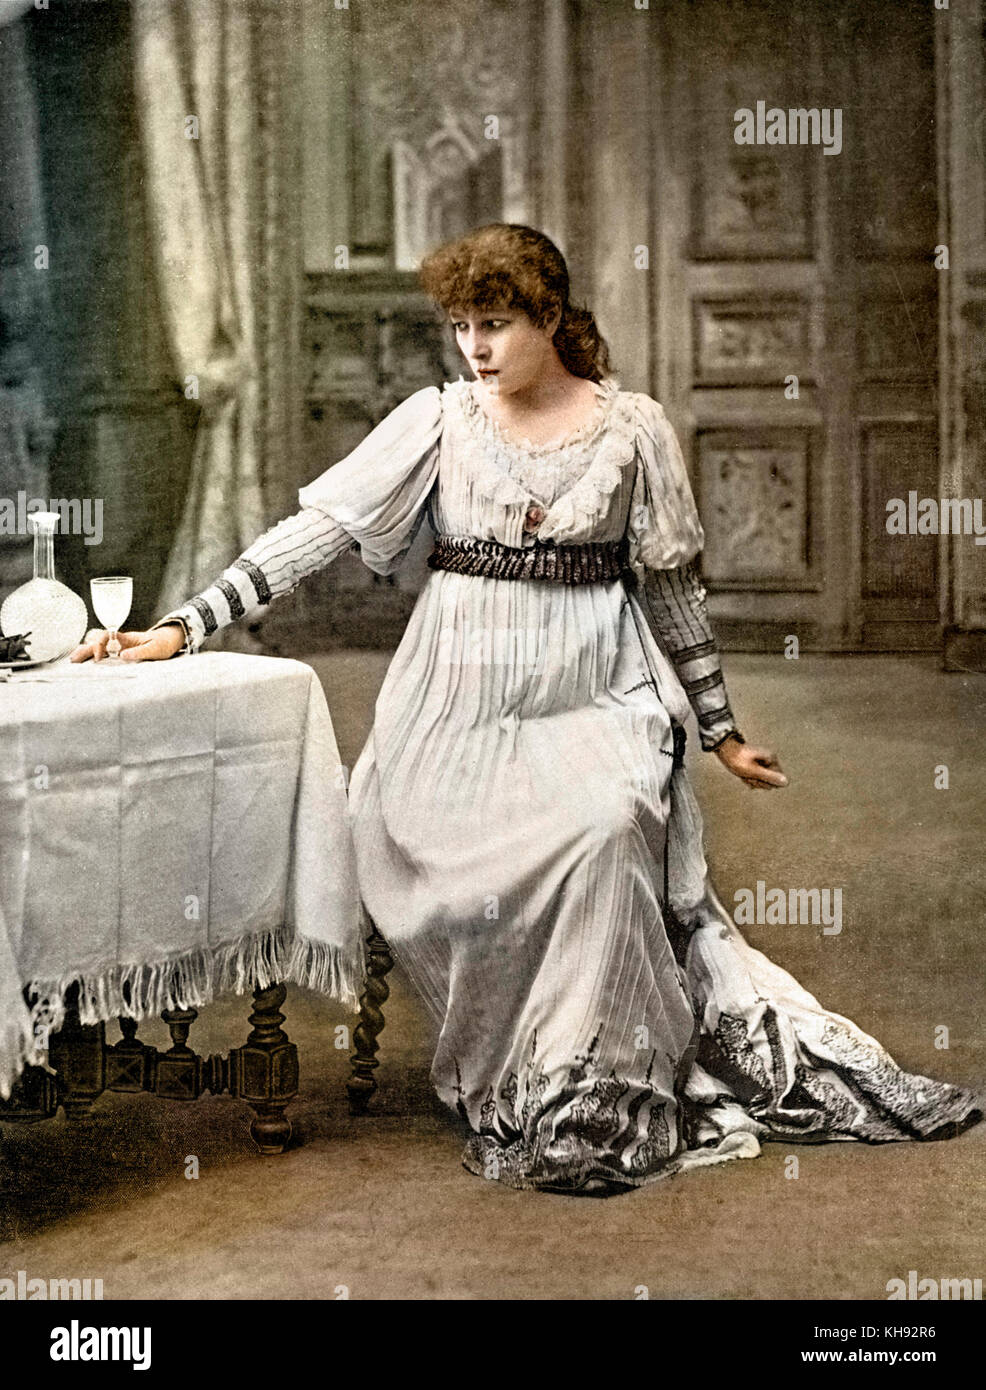 Sarah-Bernhardt dans le rôle de Tosca dans pièce de Victorien Sardou, en 1899, qui a inspiré la création de l'opéra de Puccini, "TOSCA". Banque D'Images